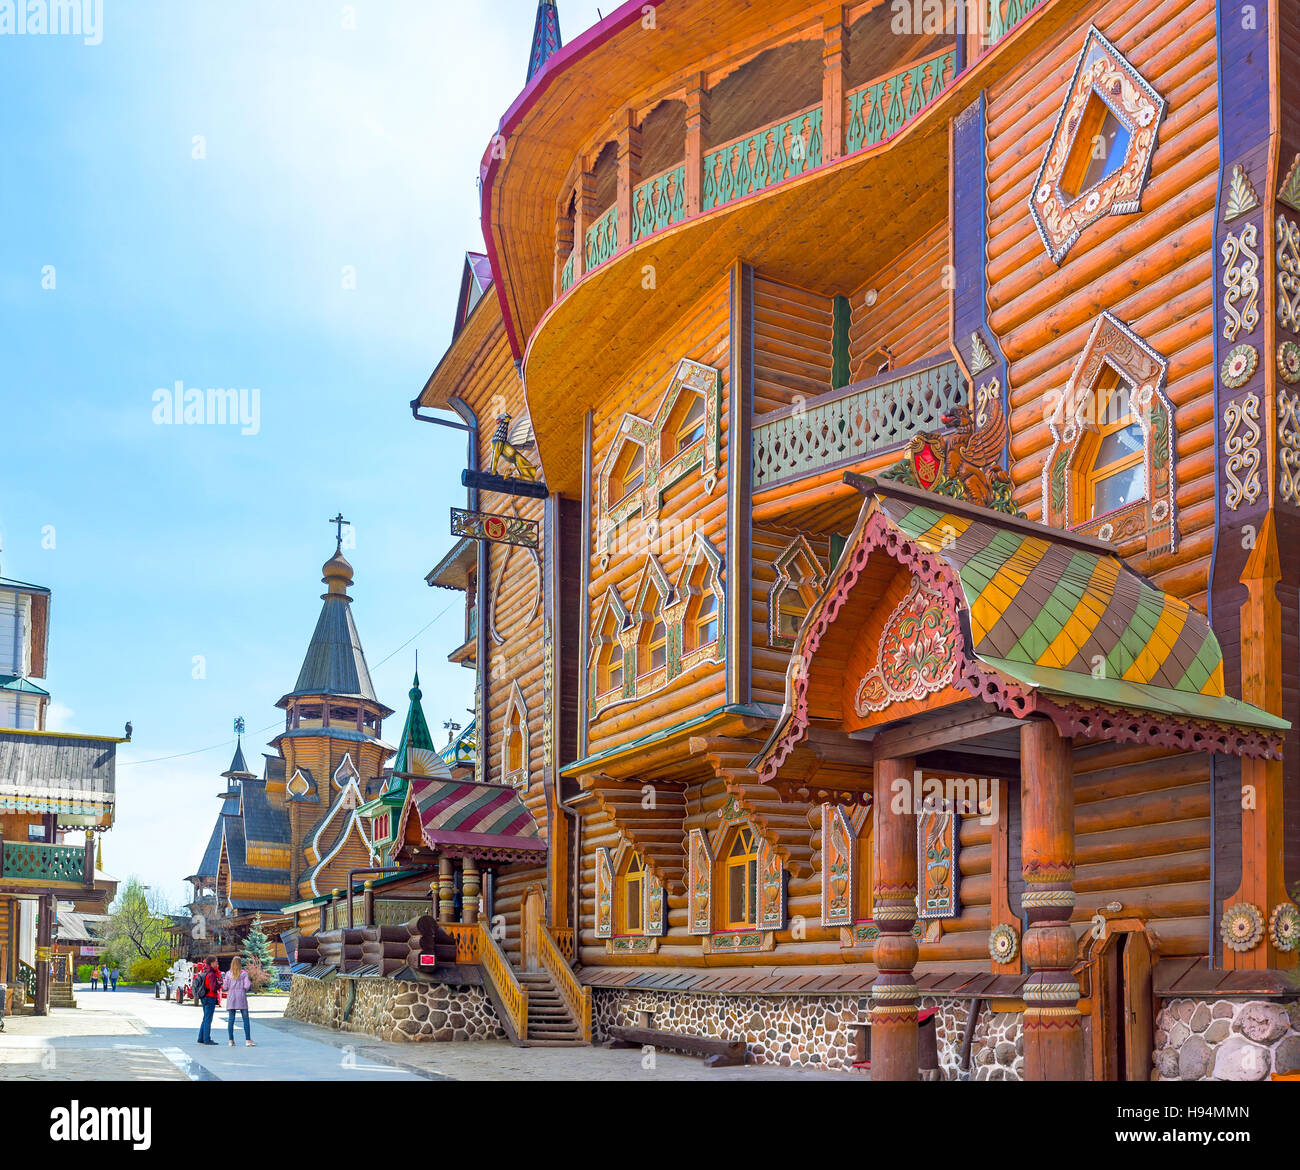 Lo splendore della tradizione medievale architettura russa con varie decorazioni scolpite e dipinte dettagli Foto Stock